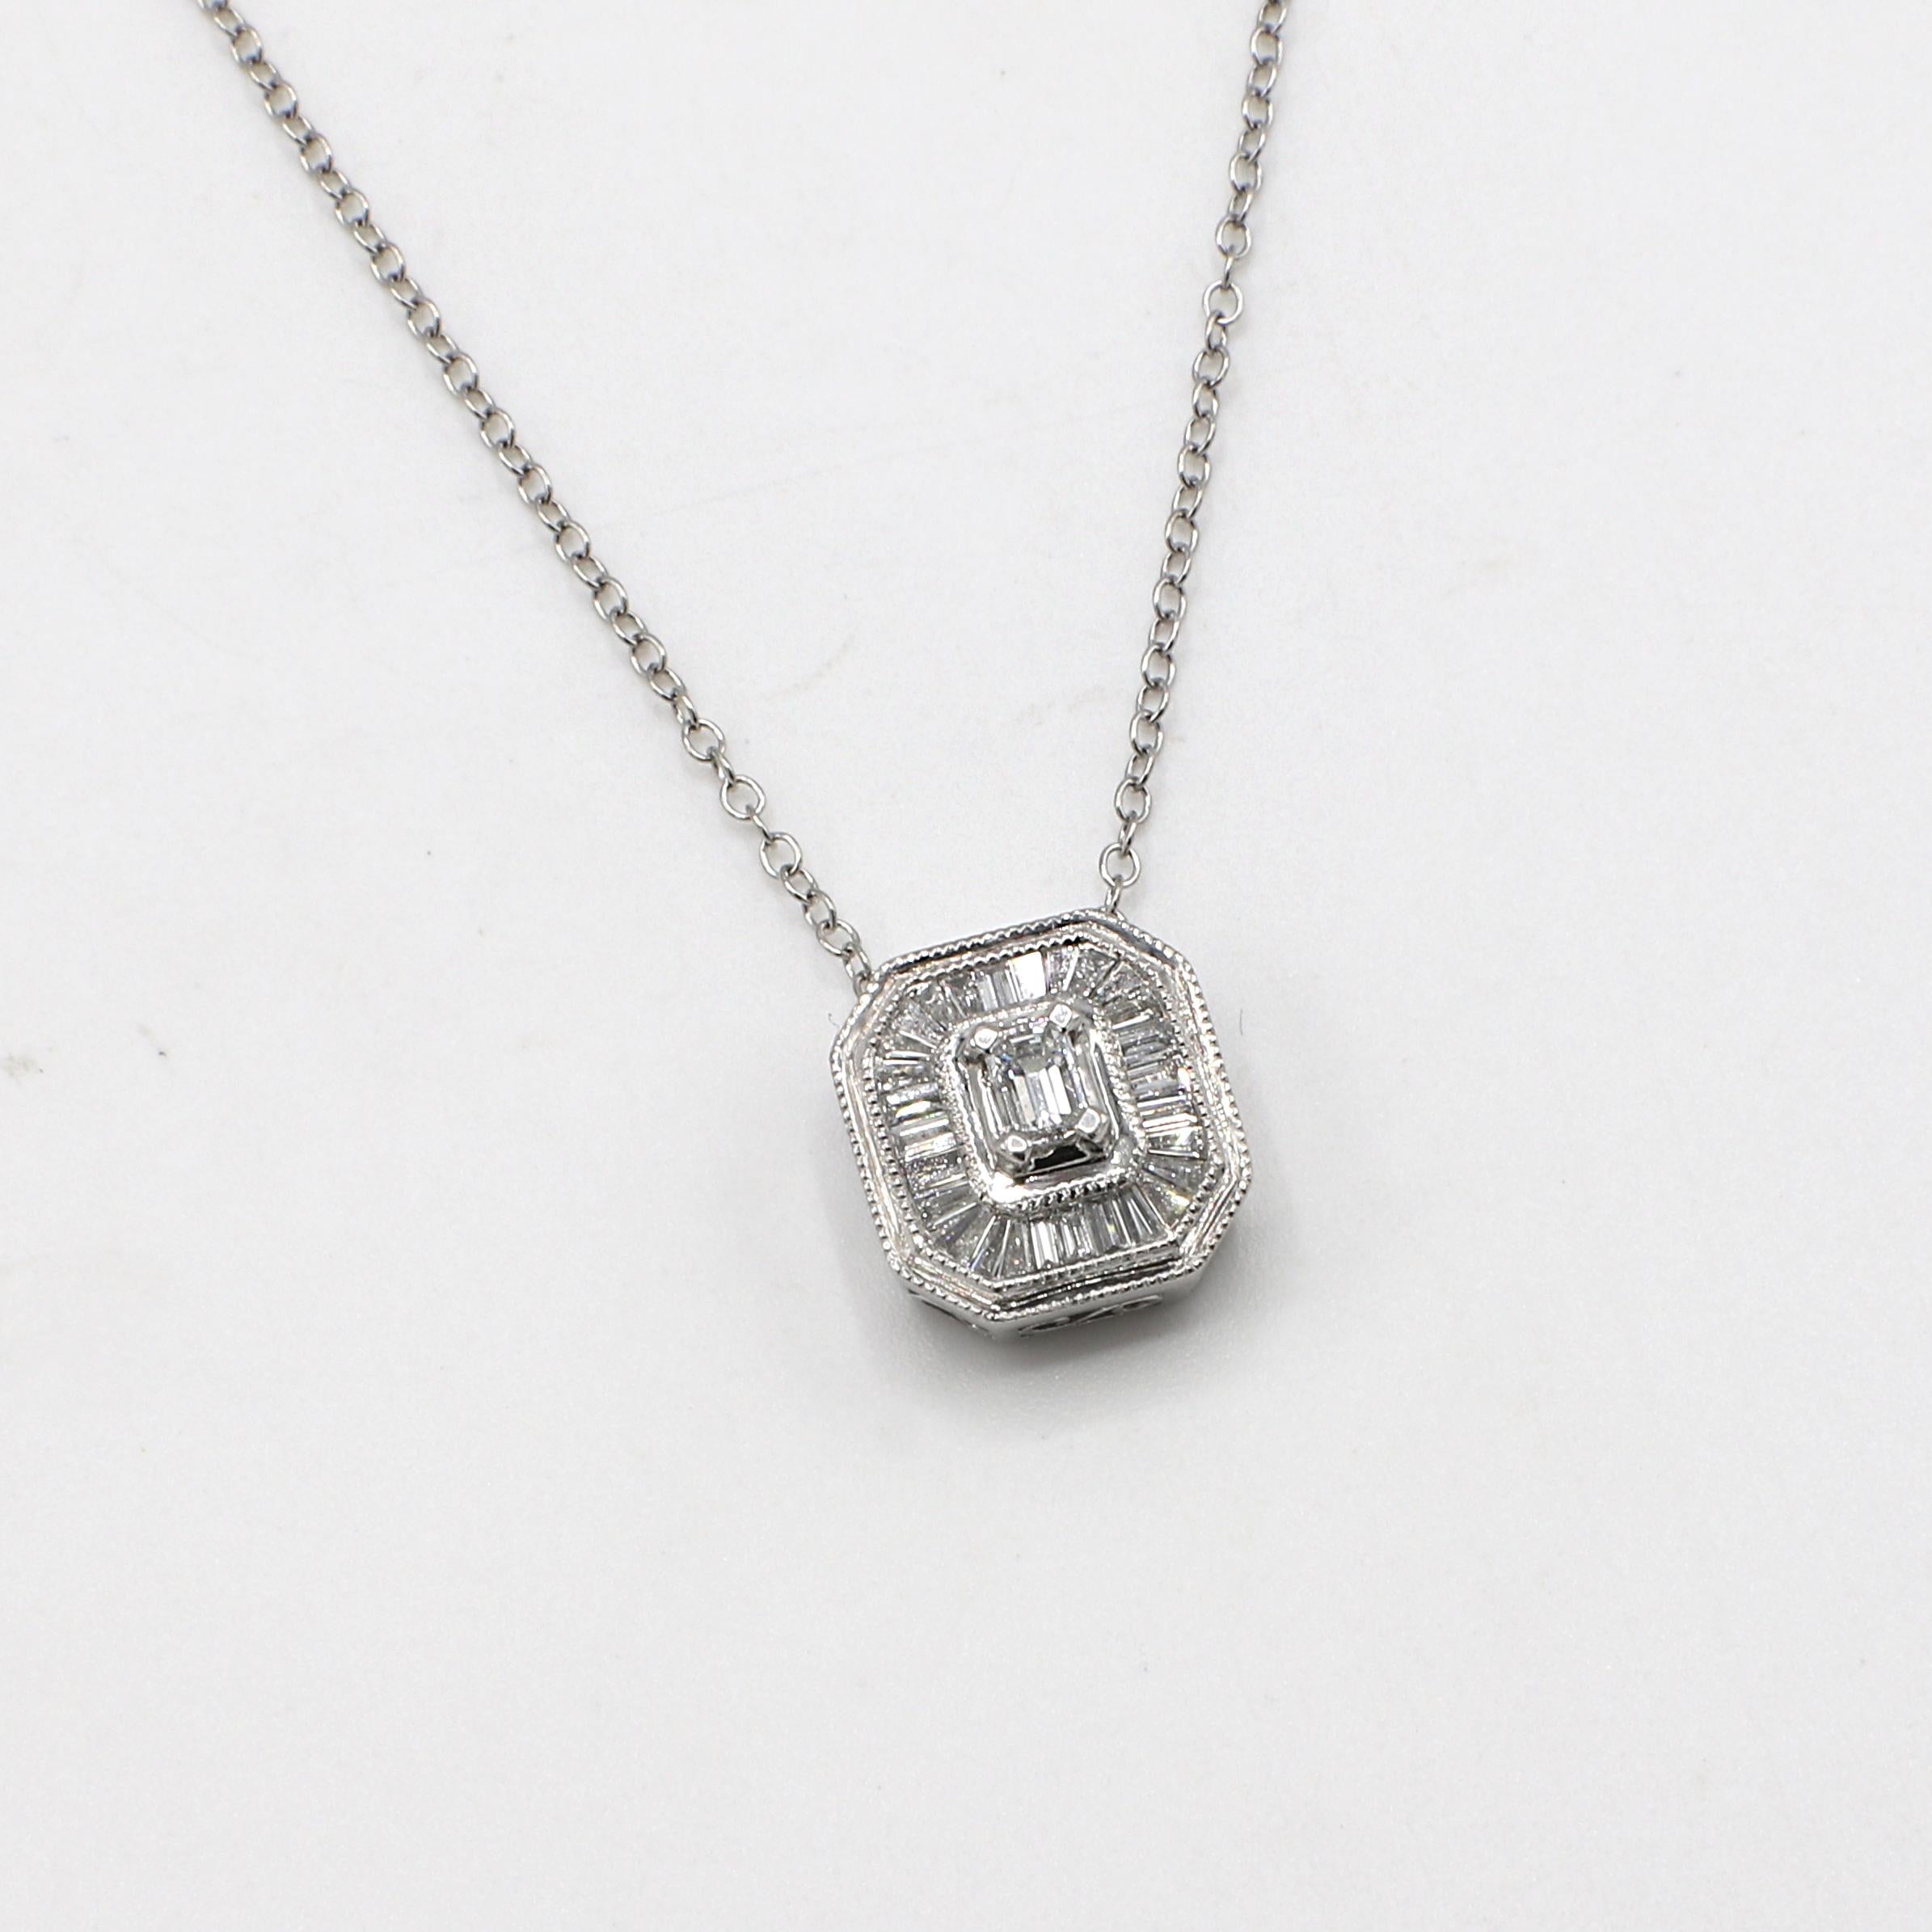 Platinum .75 Carat Diamond Baguette Cluster Pendant Drop Necklace 
Metal: Platinum
Weight: 5.11 grams
Pendant: 11.5 x 10.5mm
Chain: 18 inches
Diamonds: Approx. .75 CTW baguette diamonds G-H VS
